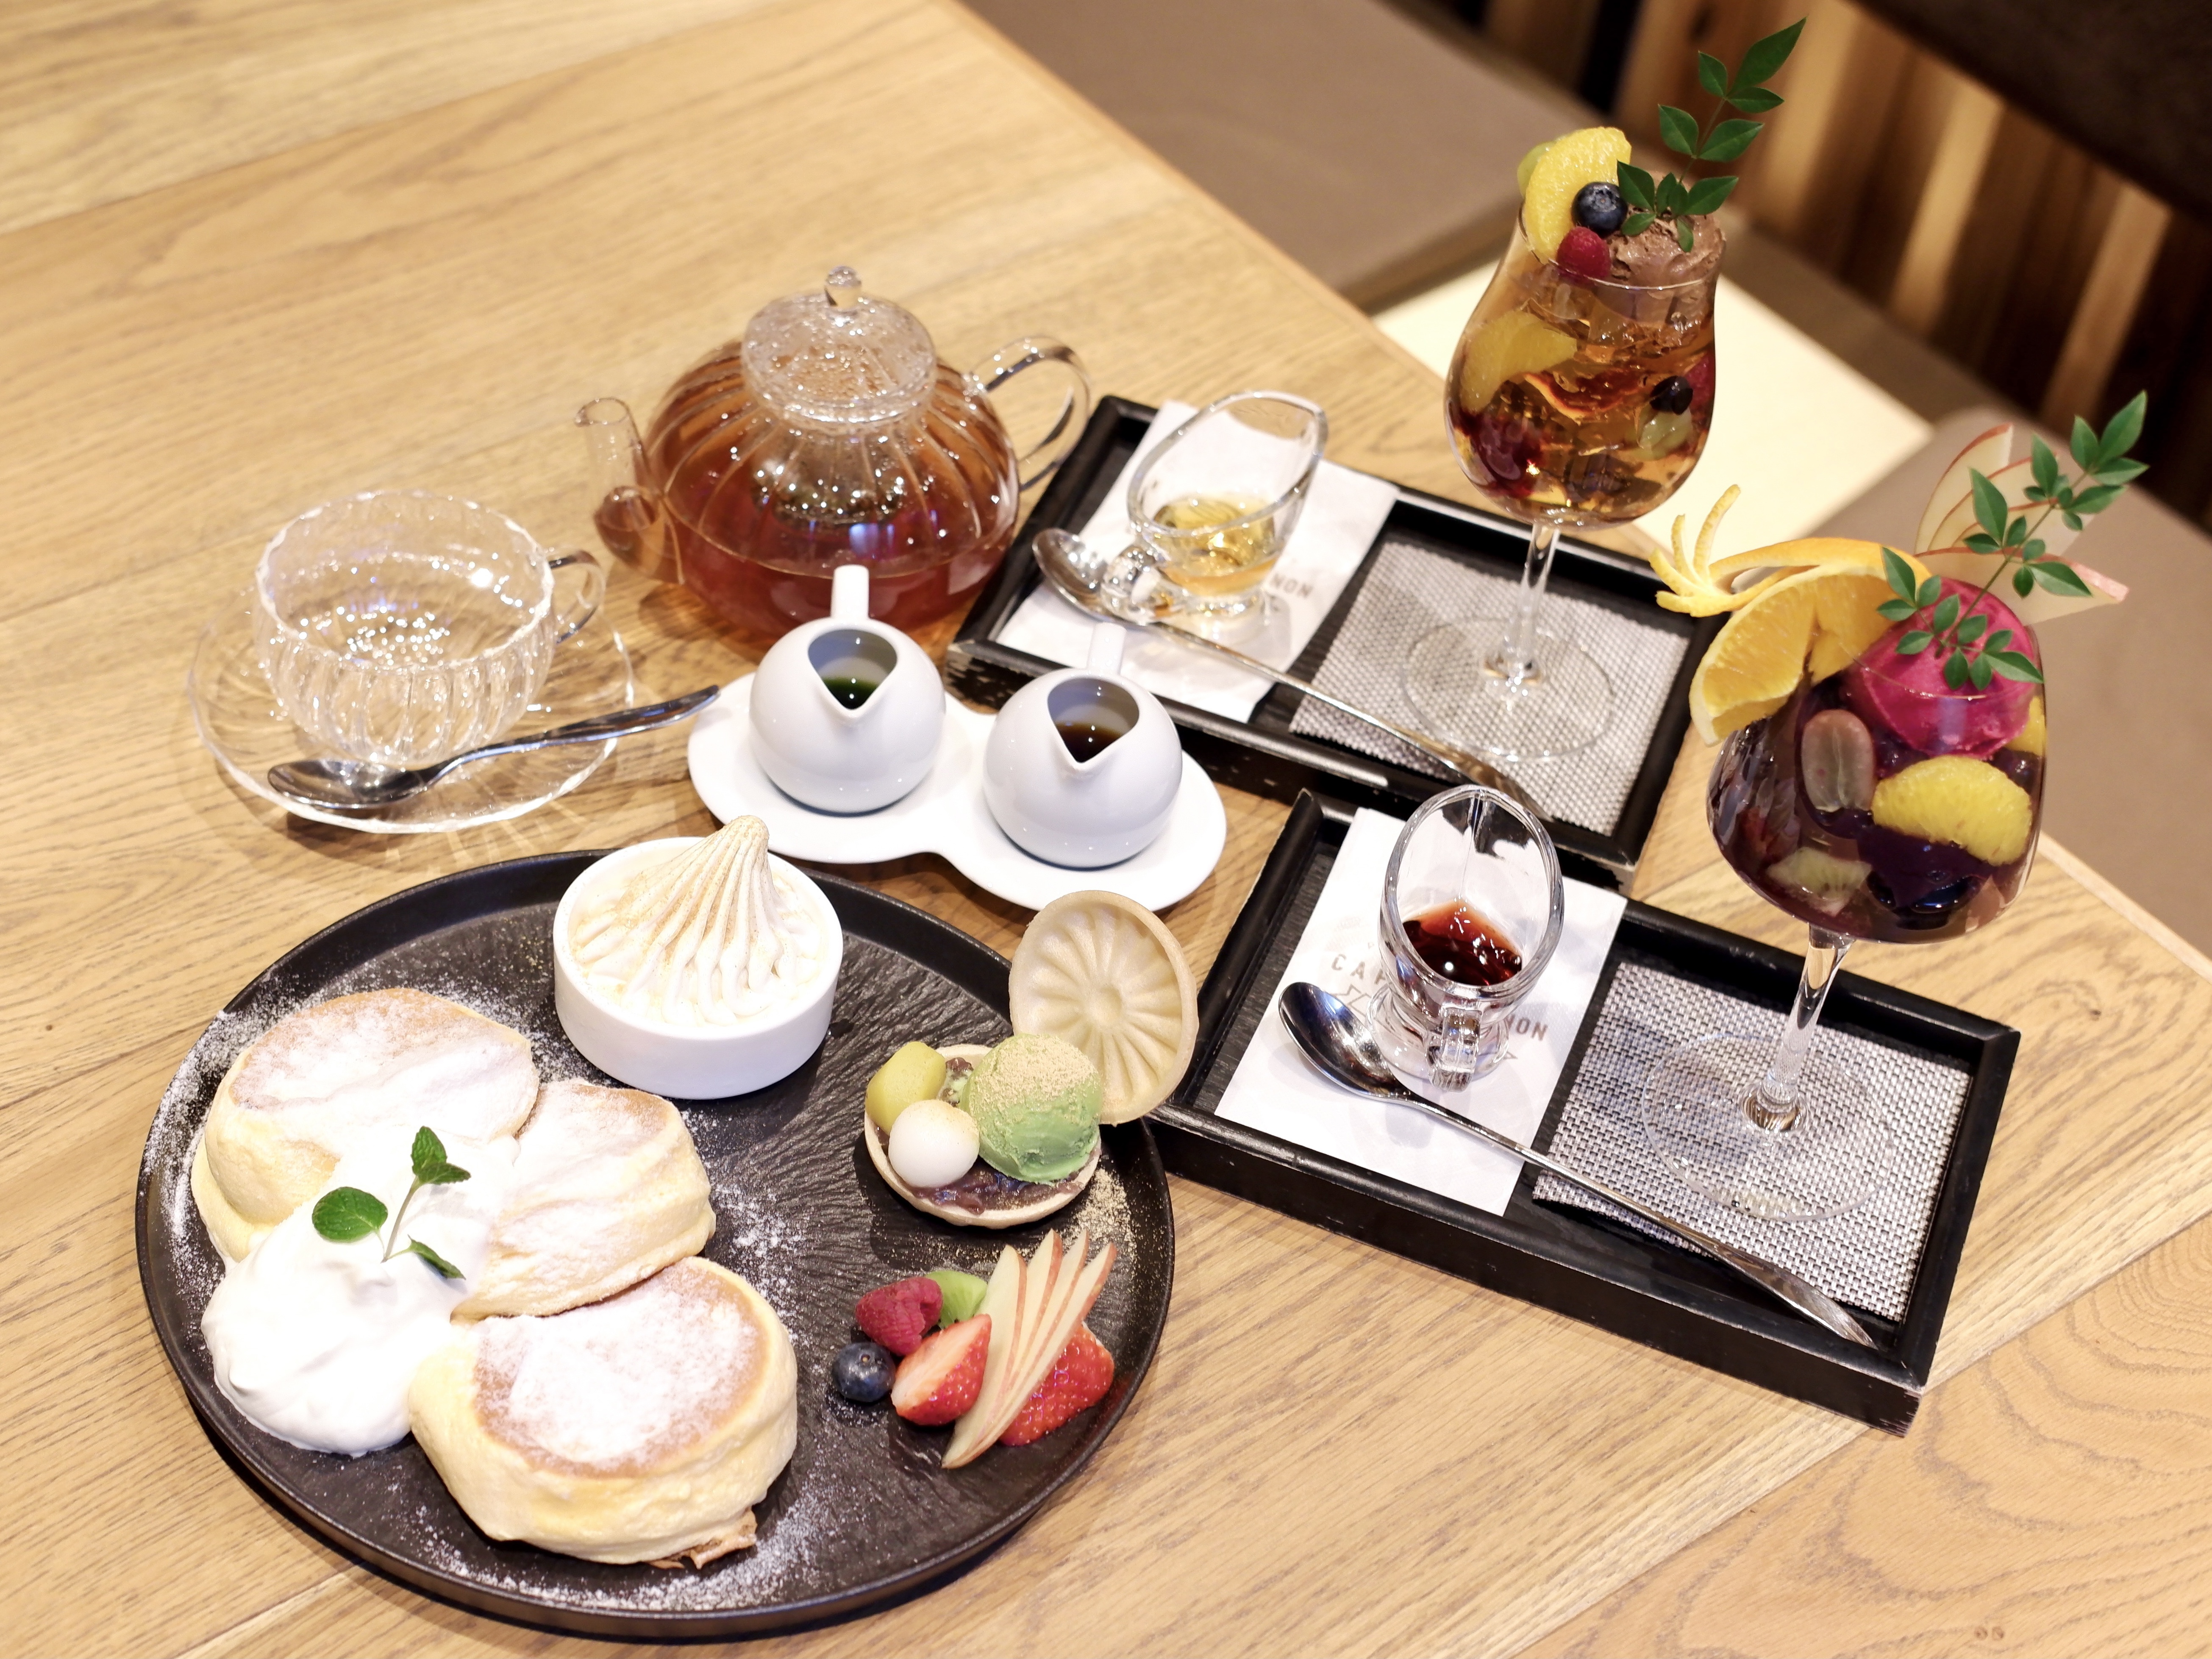 大阪では珍しい〆パフェも スフレパンケーキが絶品の隠れ家カフェ Cafe Annon カフェ アンノン に潜入 大阪ミナミじゃーなる